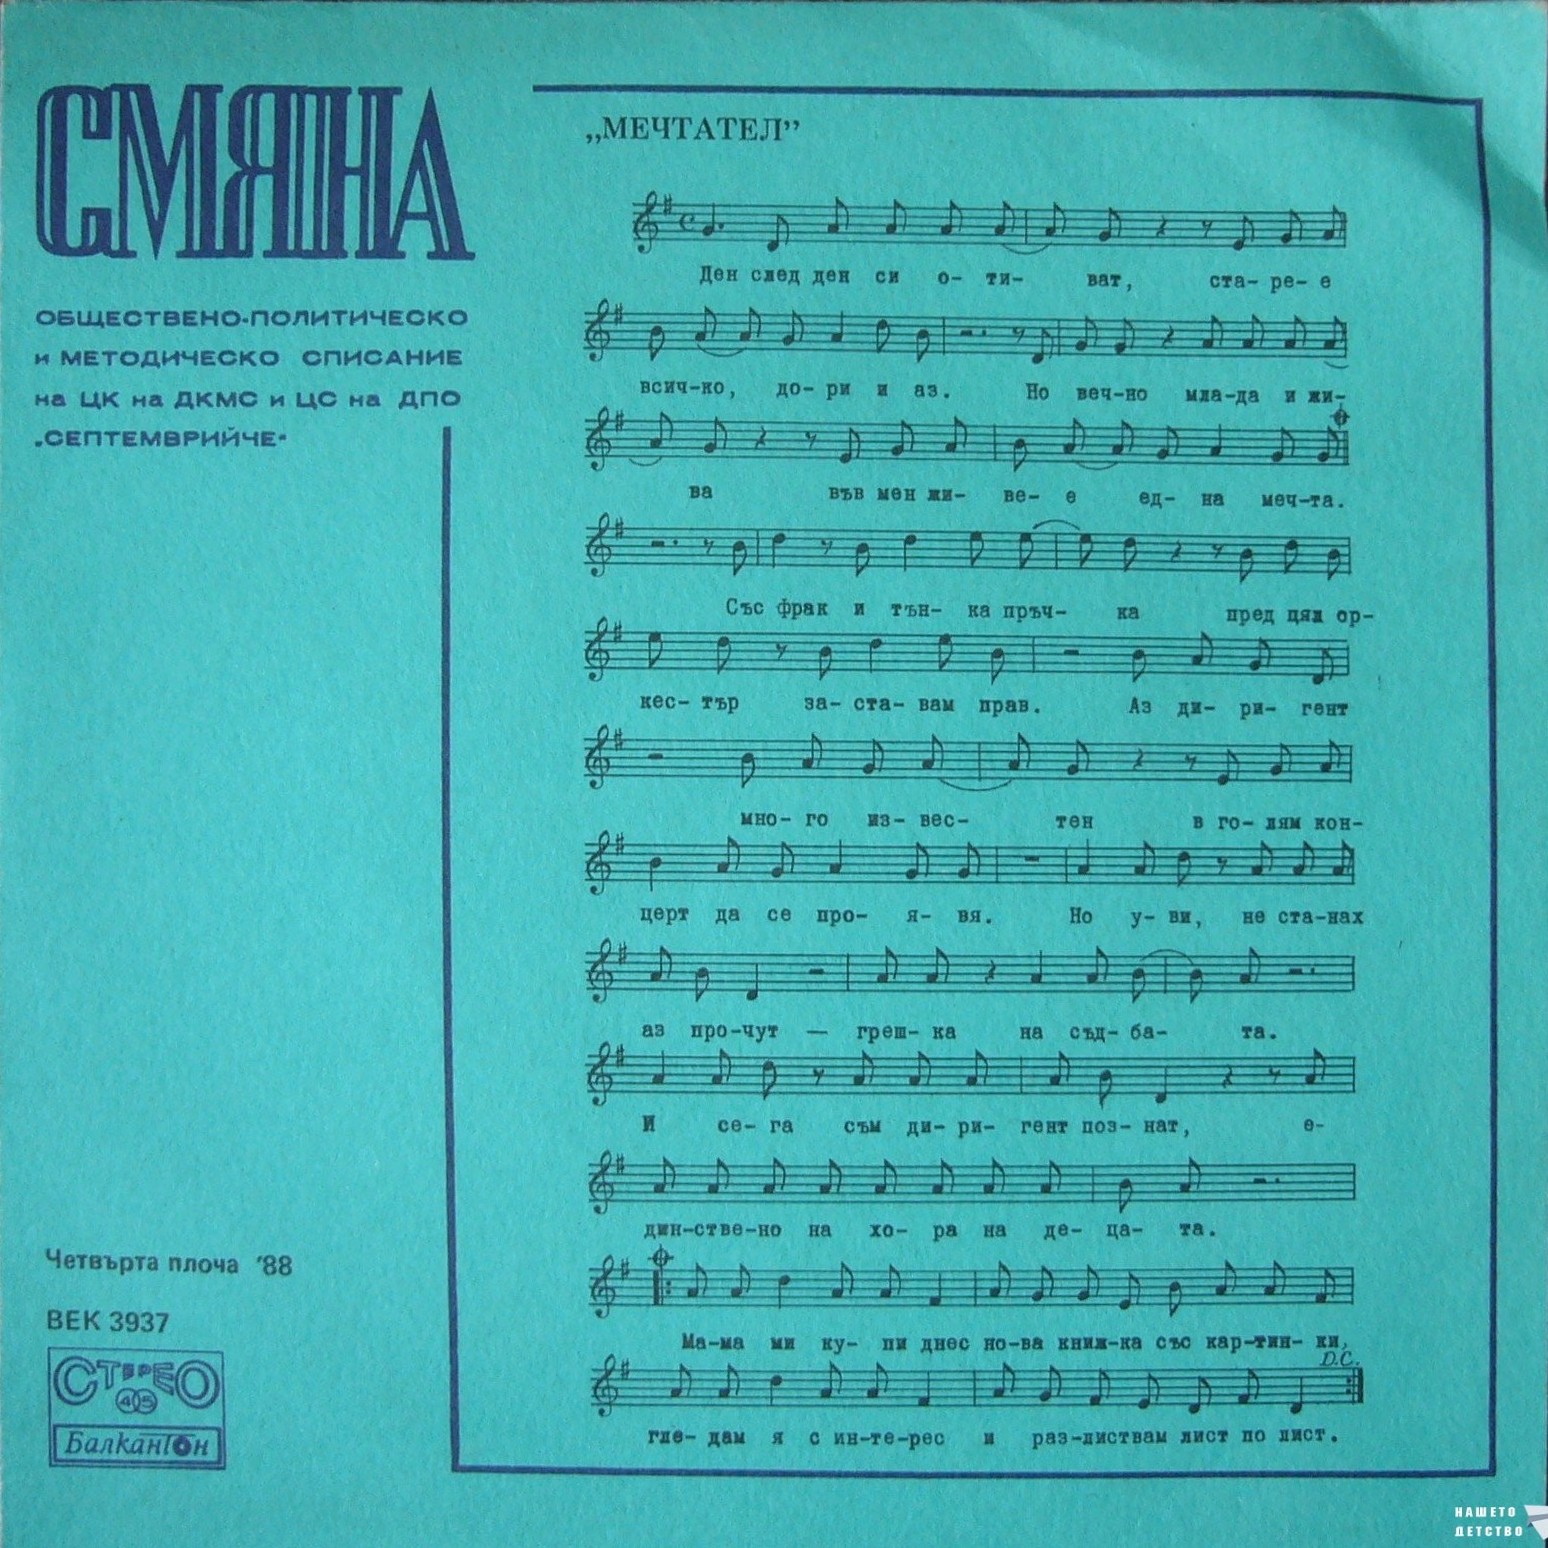 Смяна '88 (четвърта плоча)